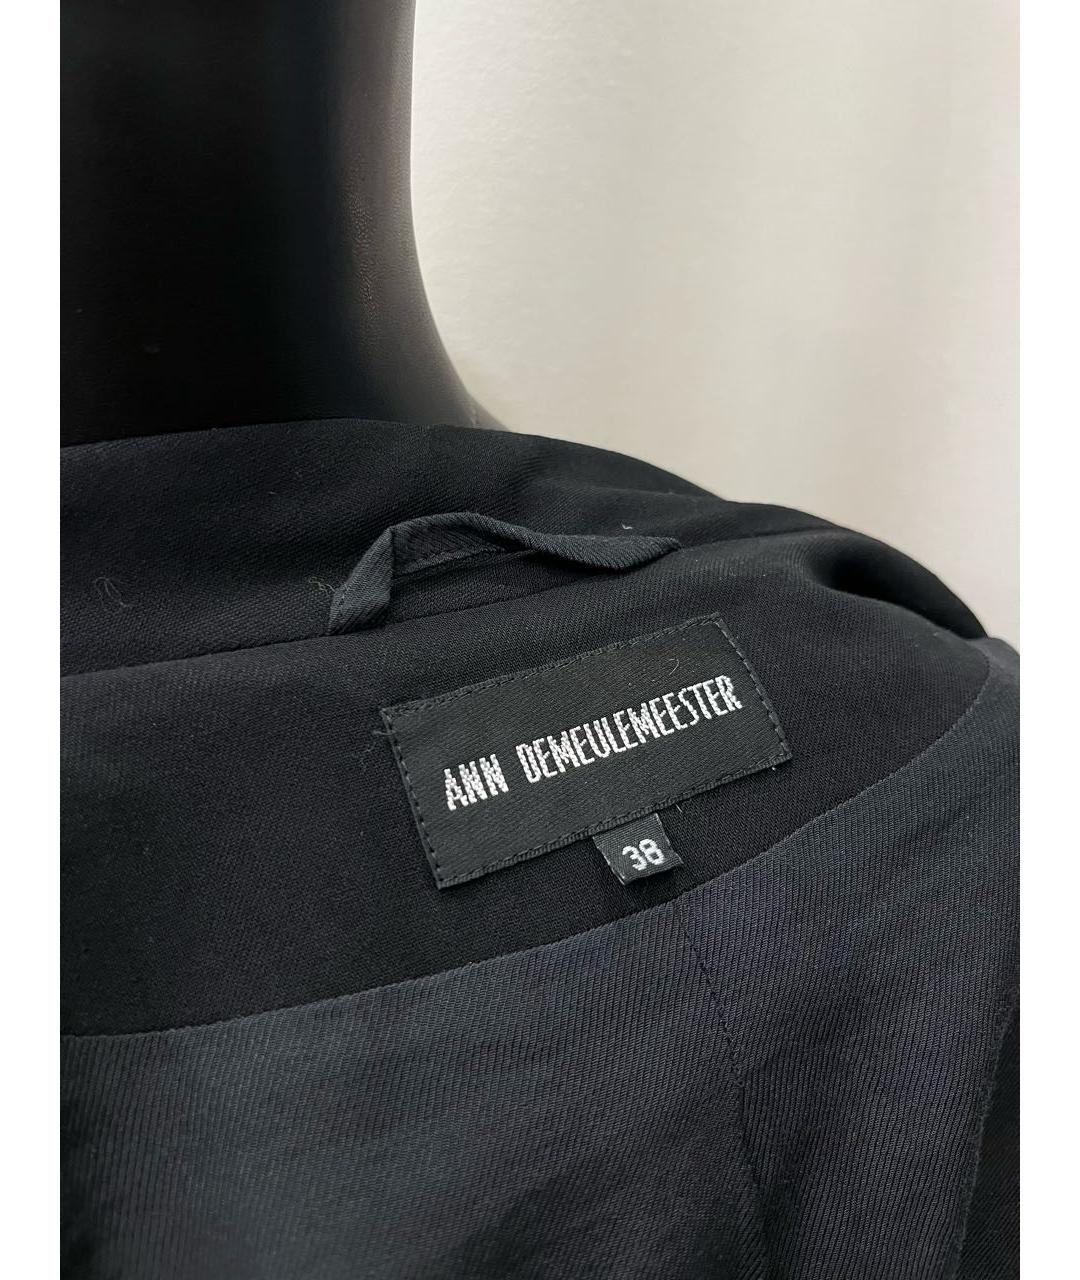 ANN DEMEULEMEESTER Черный шерстяной жакет/пиджак, фото 3